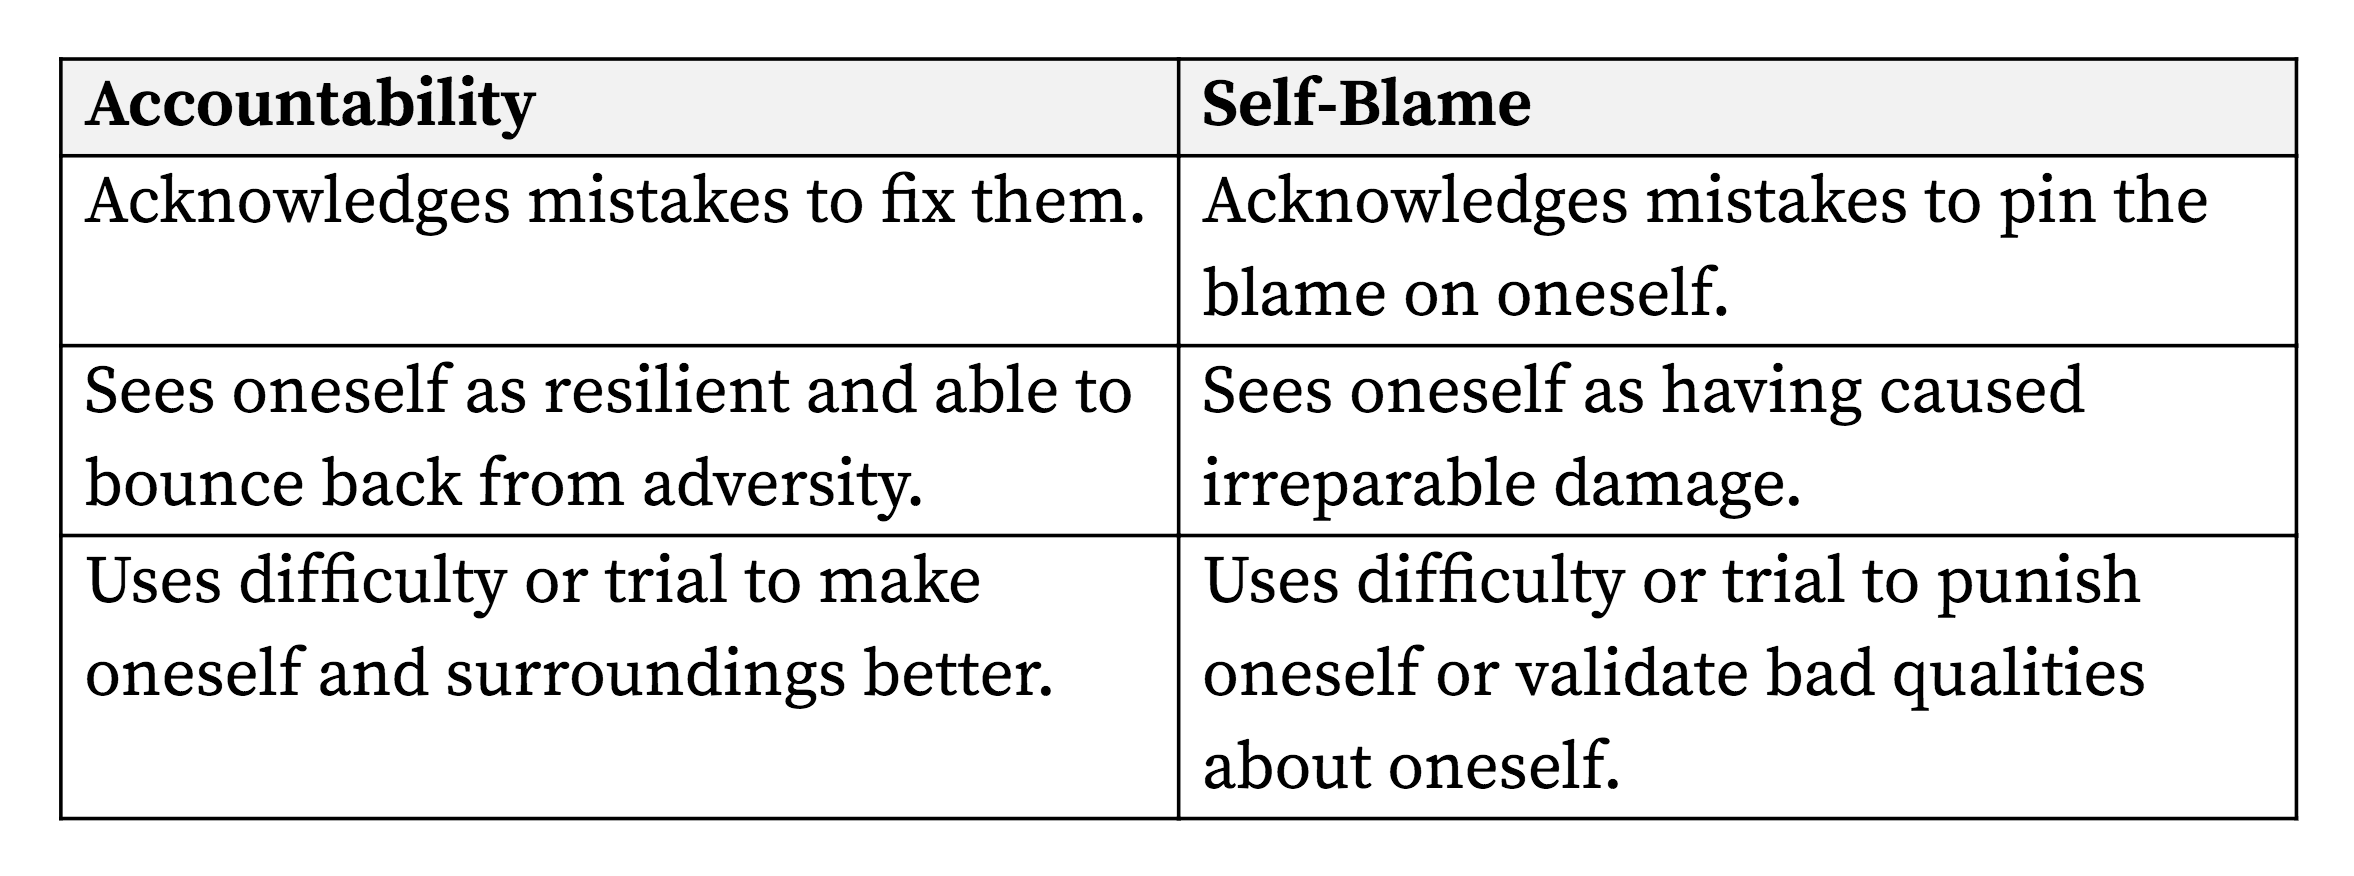 accountability_self-blame-chart